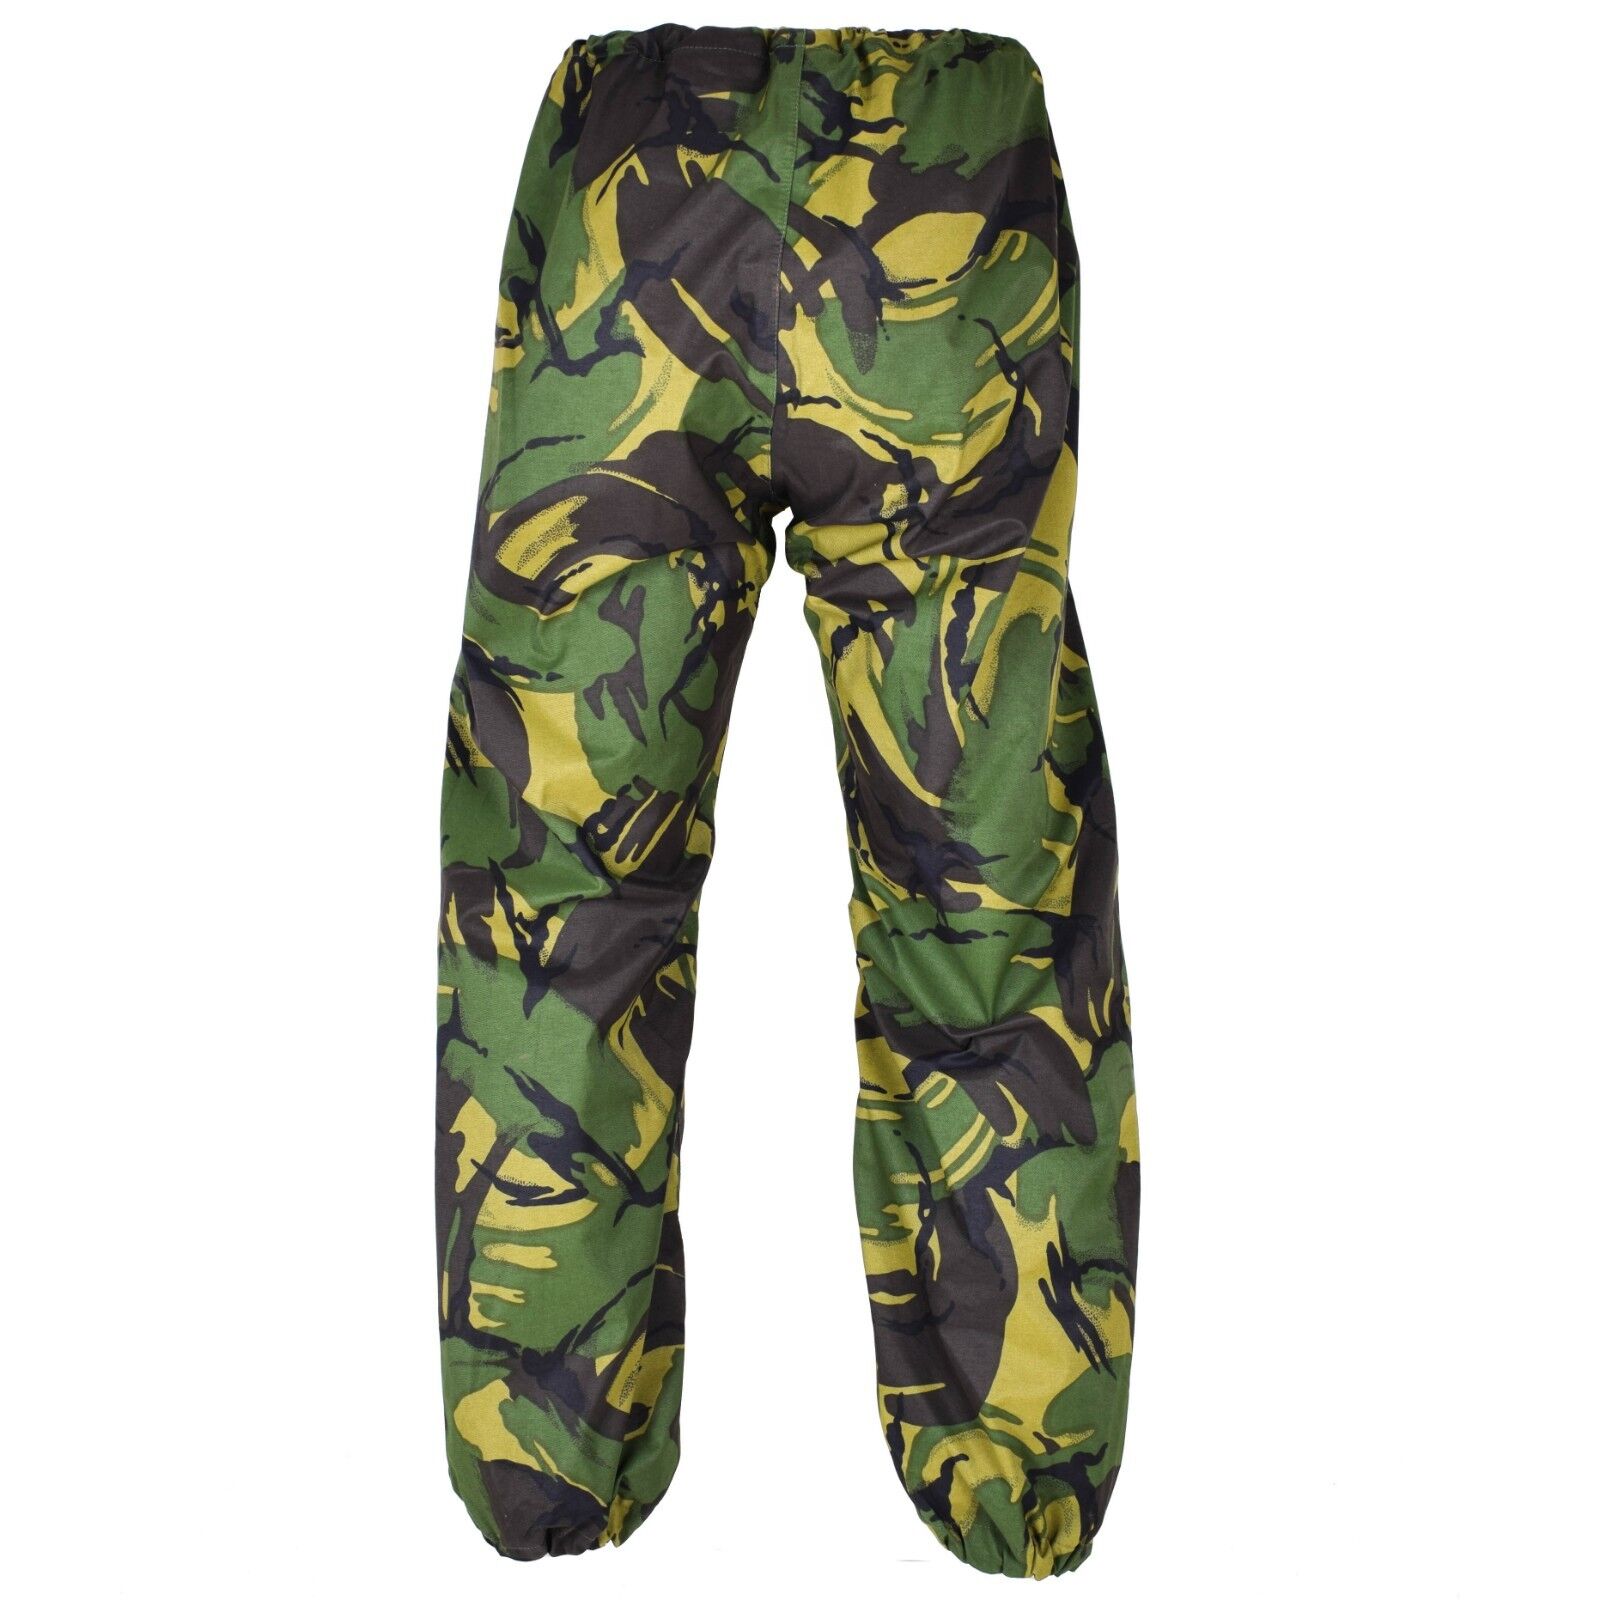 Genuine British army military combat DPM camo rain pants waterproof goretex